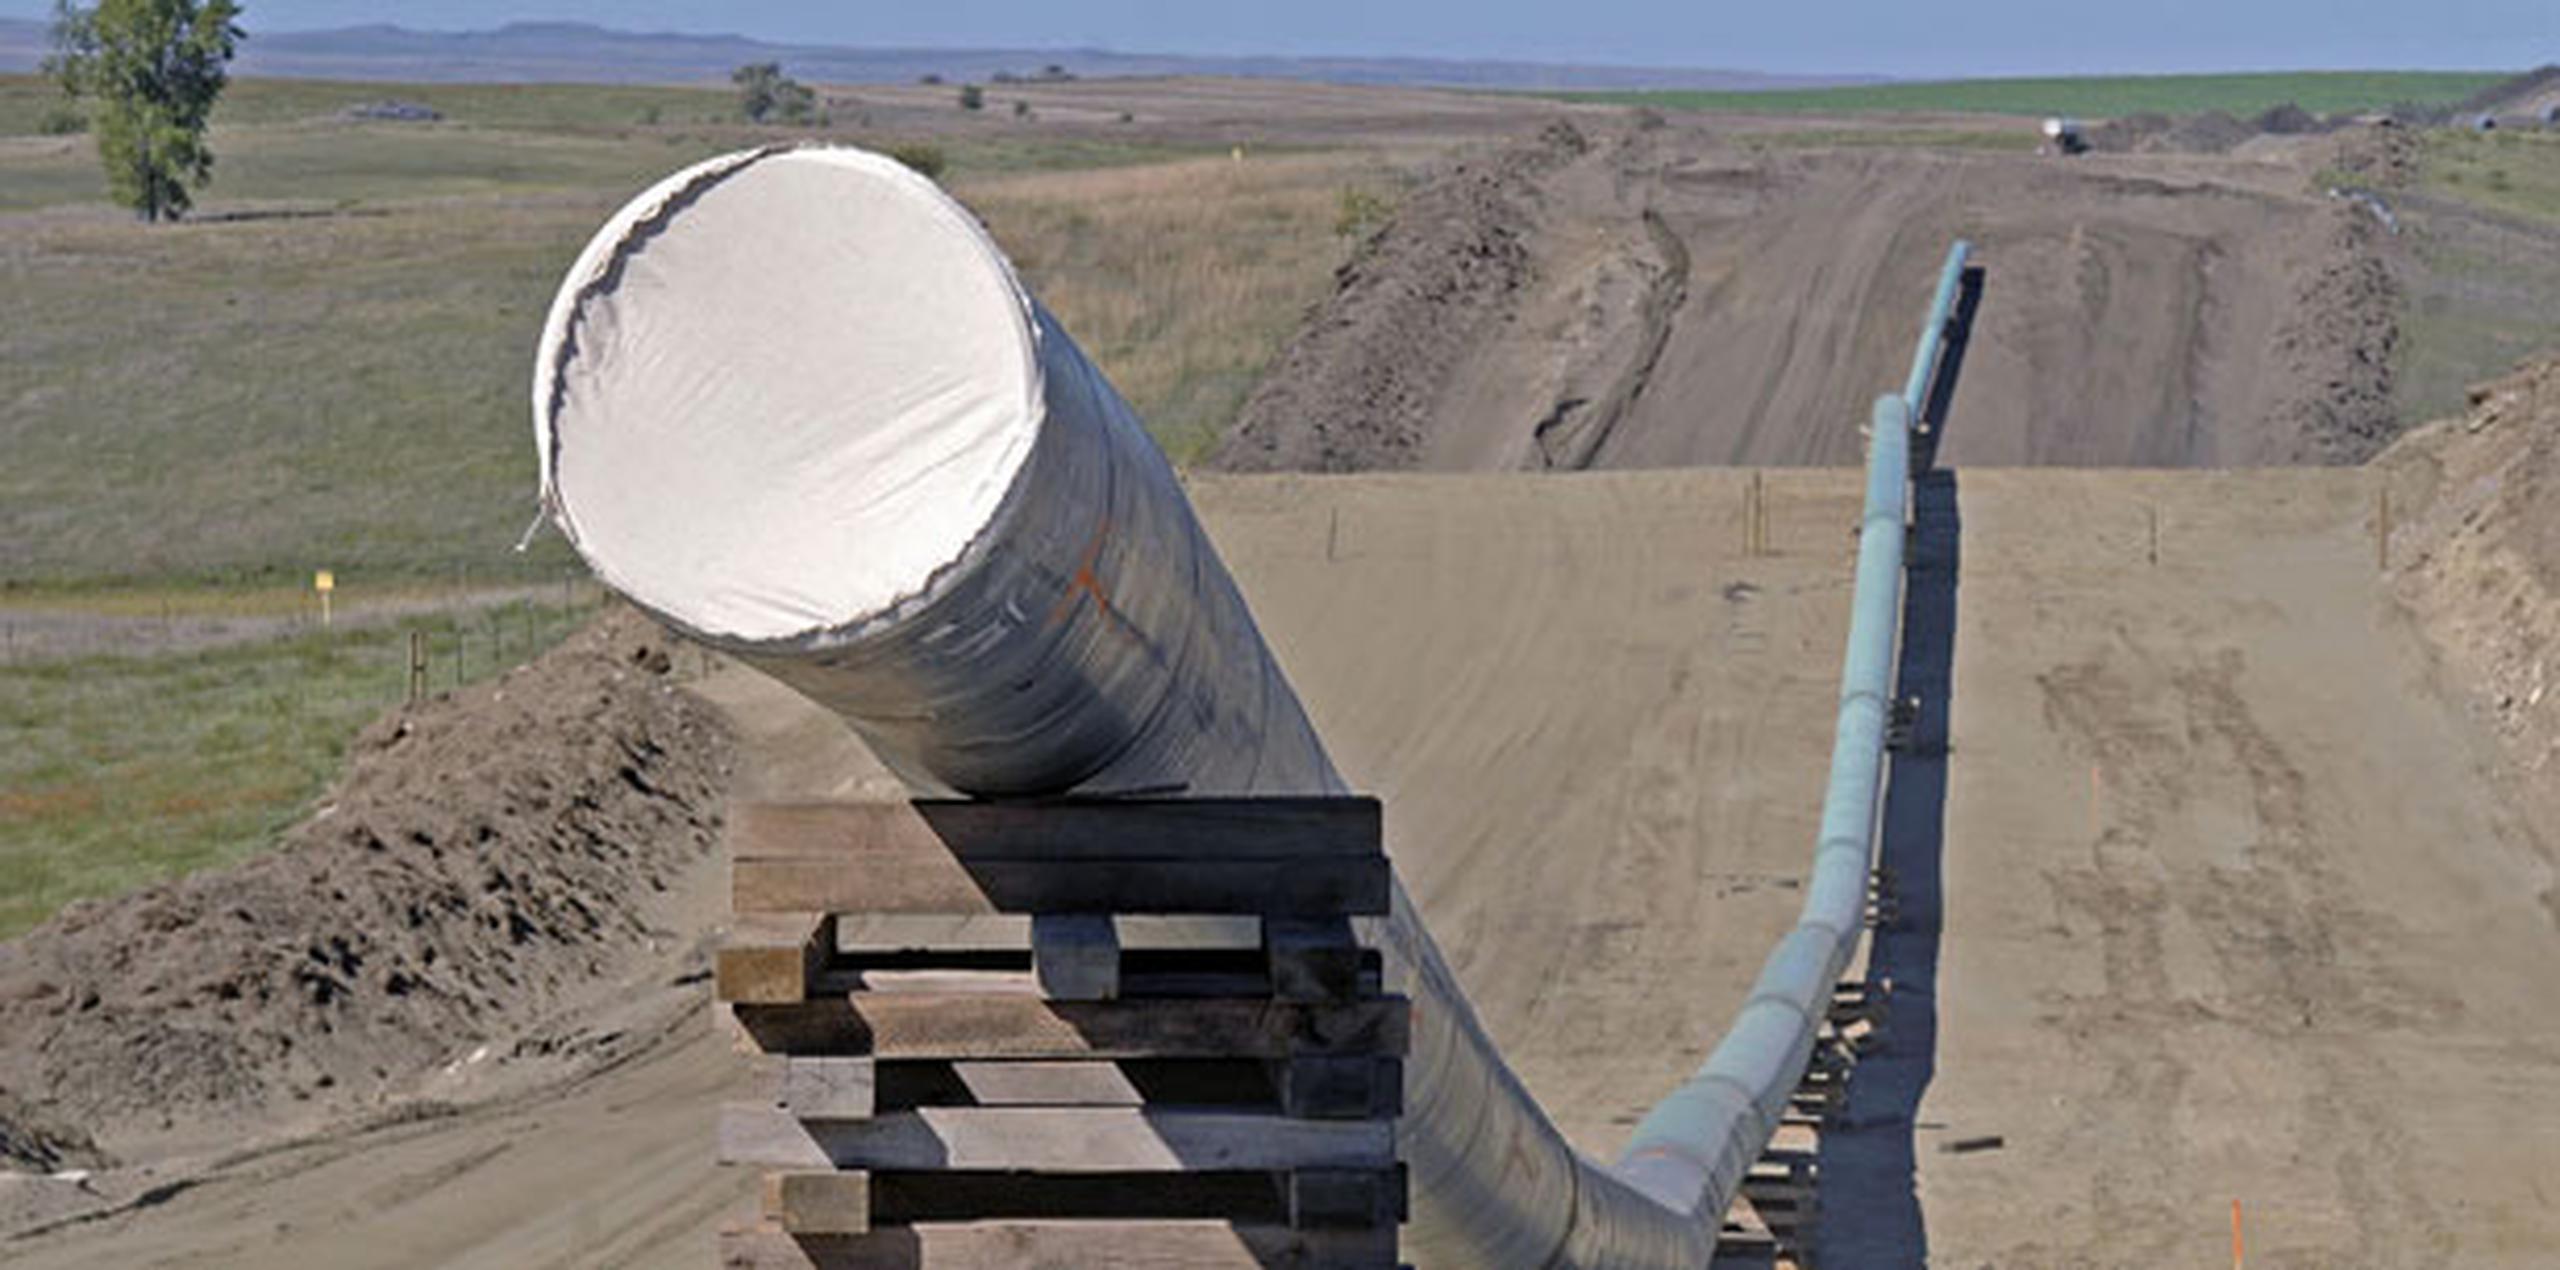 La compañía ha sostenido que el oleoducto, que trasladará petróleo desde el yacimiento Bakken de Dakota del Norte por más de 1,600 kilómetros (1,000 millas) a través de diversos estados hasta un puerto de embarque en Illinois, será seguro. (Archivo)